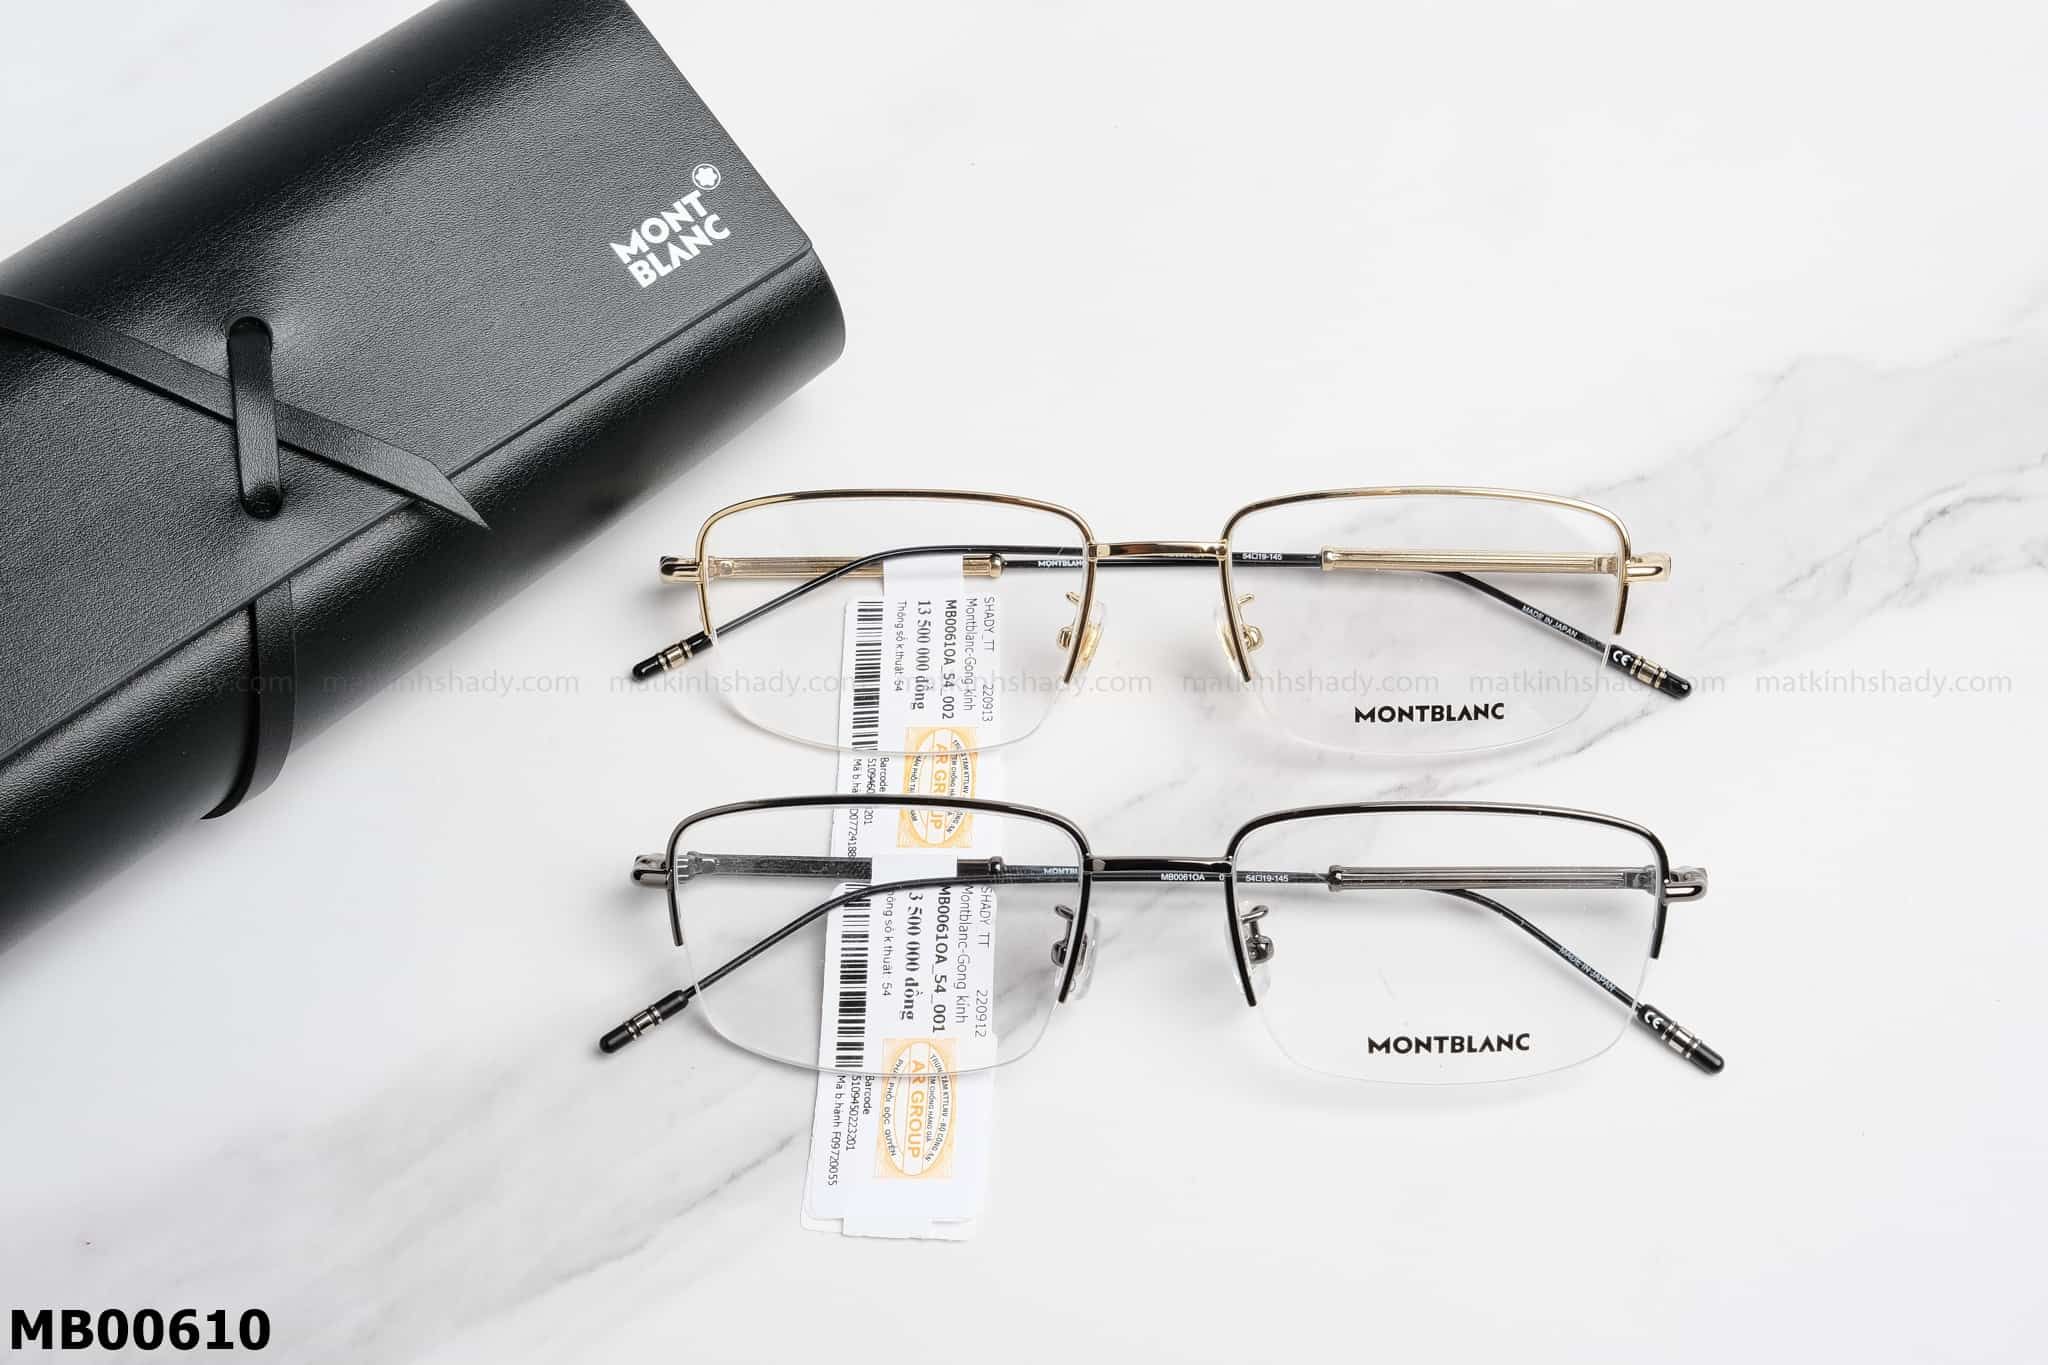  Montblanc Eyewear - Glasses - MB00610 